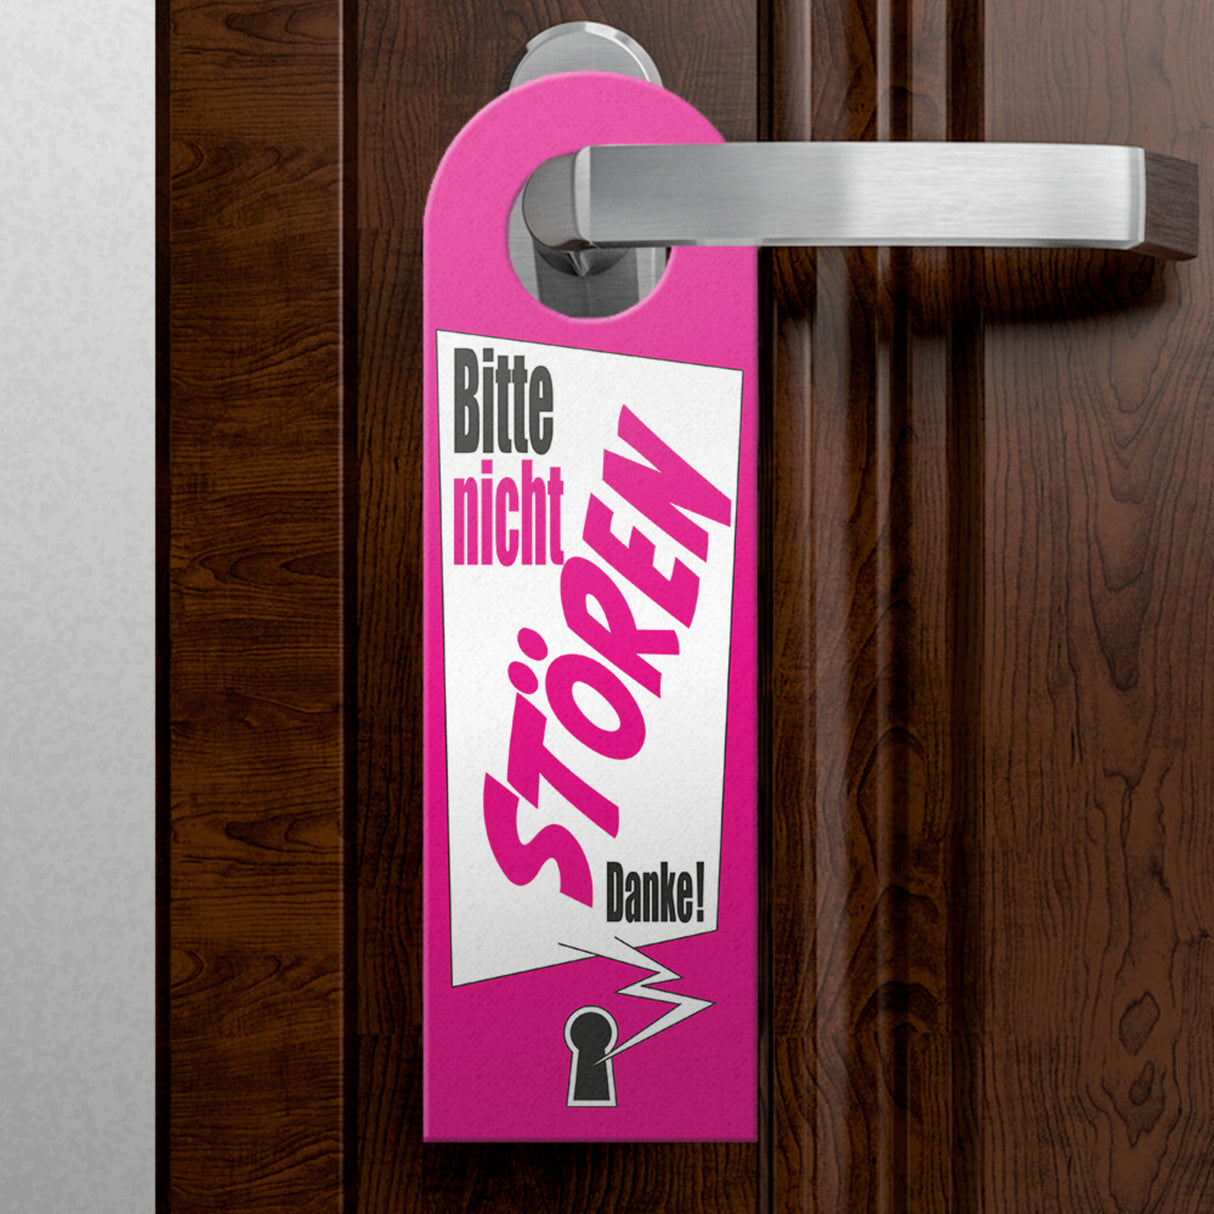 Bitte nicht stören oder klopfen Türhänger mit Schlüsselloch Motiv in pink